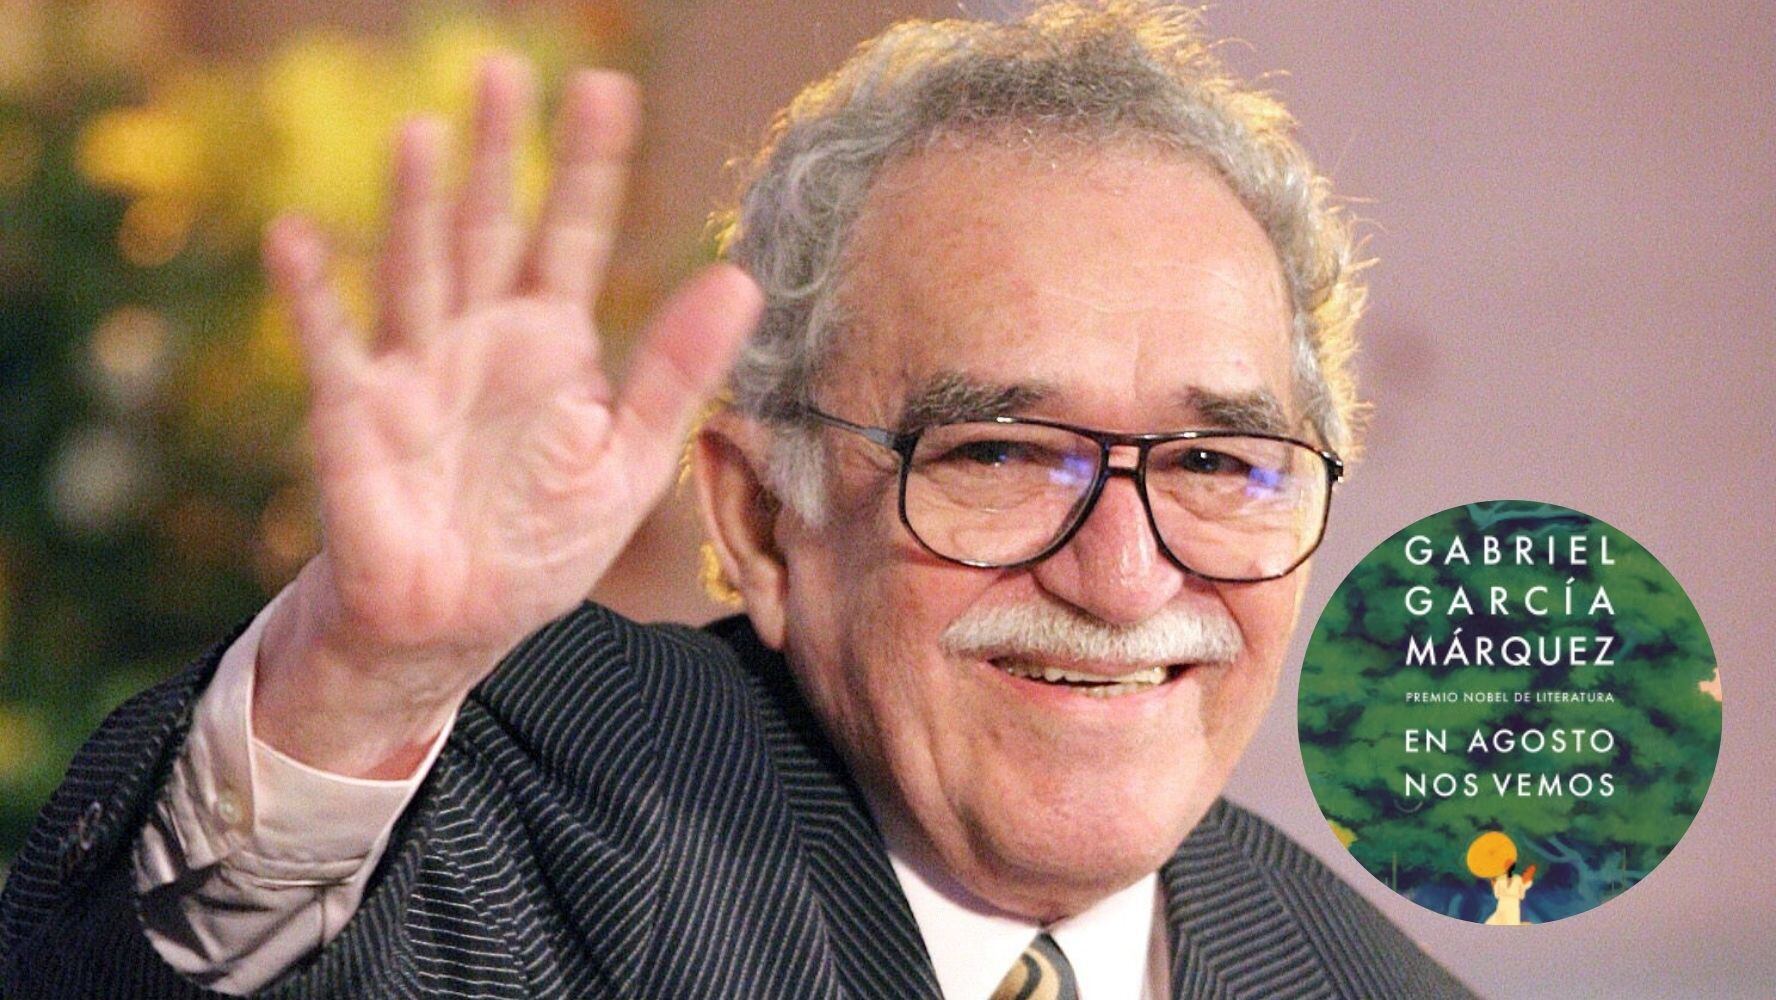 Gabriel García Márquez estrena libro que escribió pese a pérdida de memoria: ‘Hay que destruirlo’